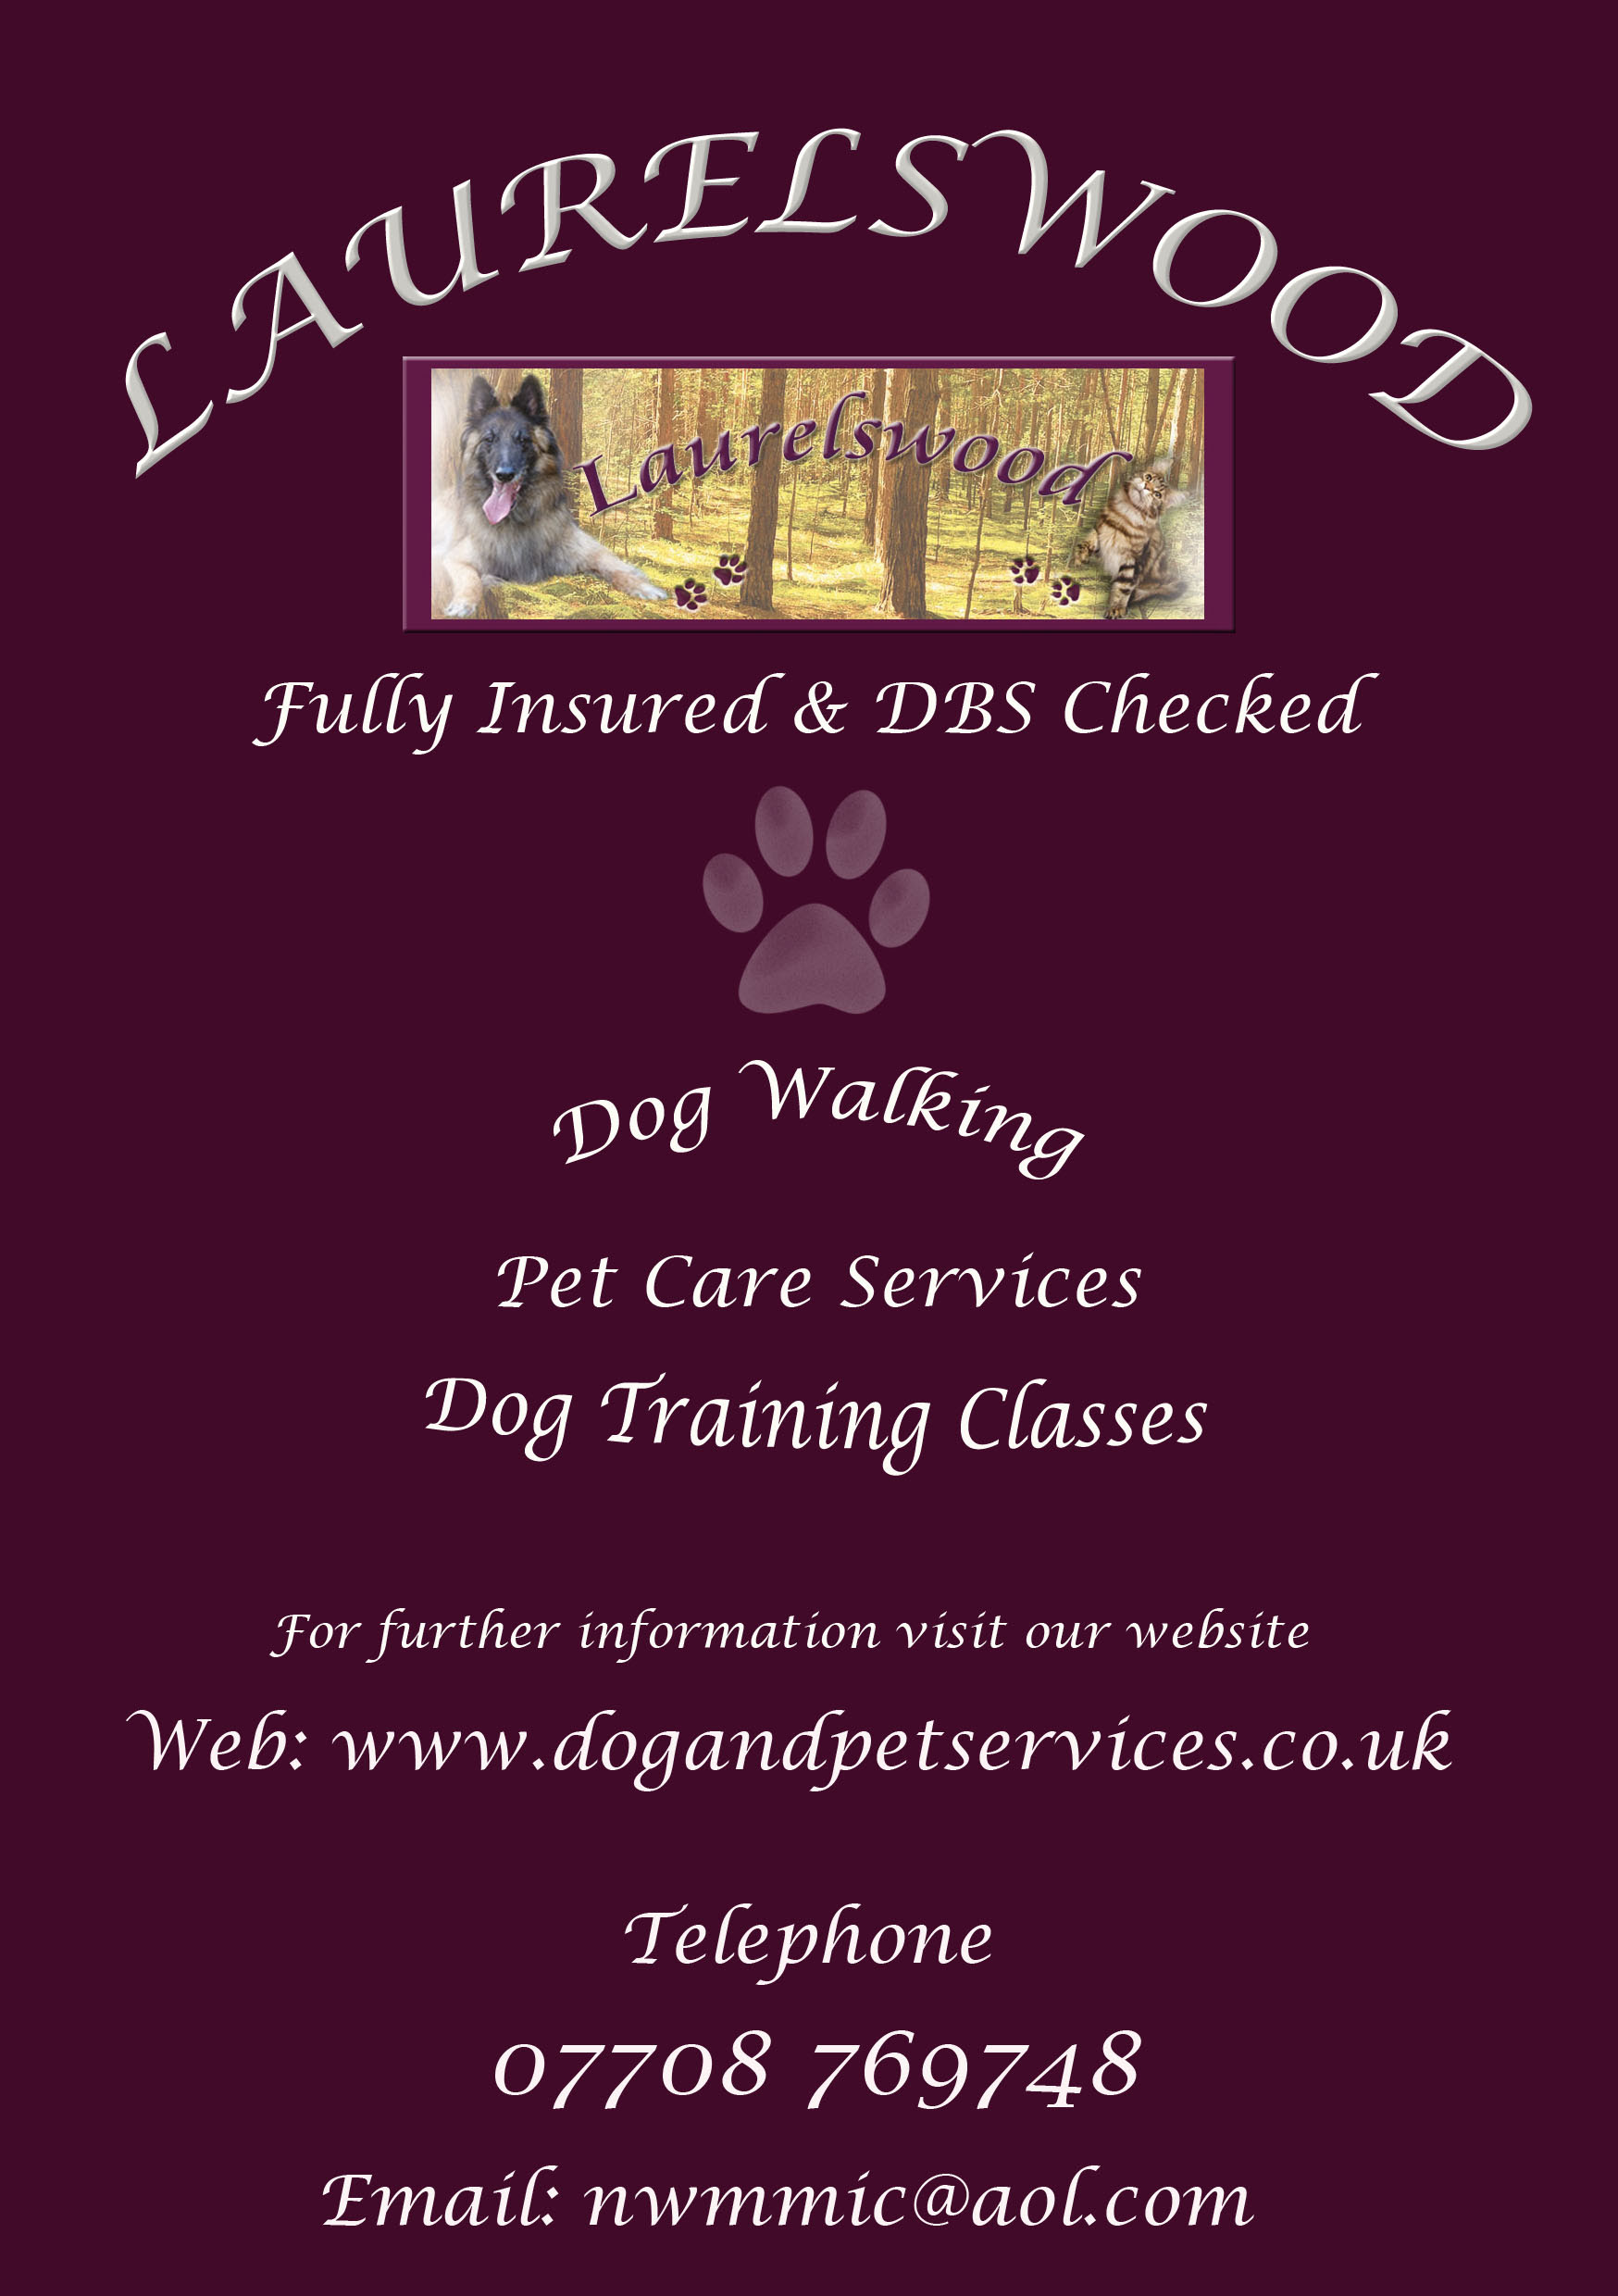 Laurelswood Dog Walking | Dog Training | Pet Services ...